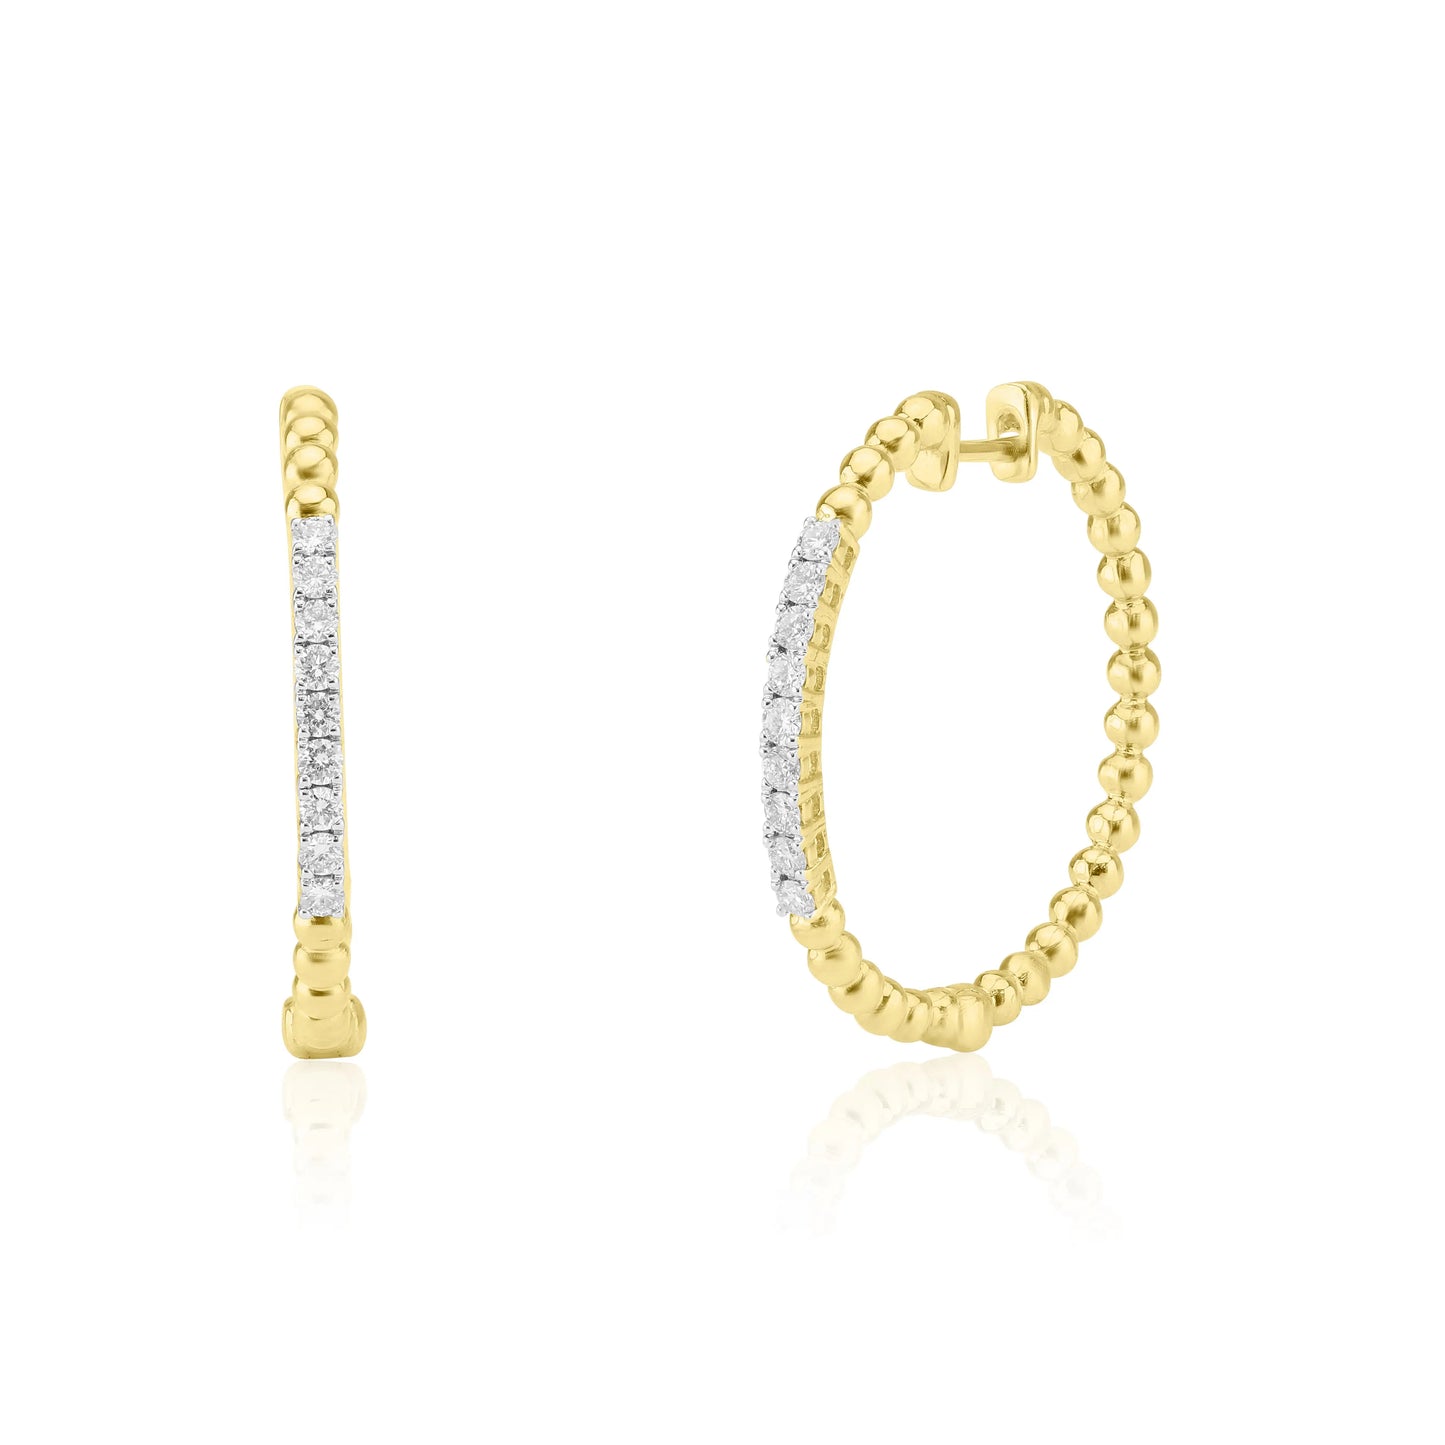 White Gold Earrings Beaded Diamond Hoop Earrings dansonjewelers Danson Jewelers 